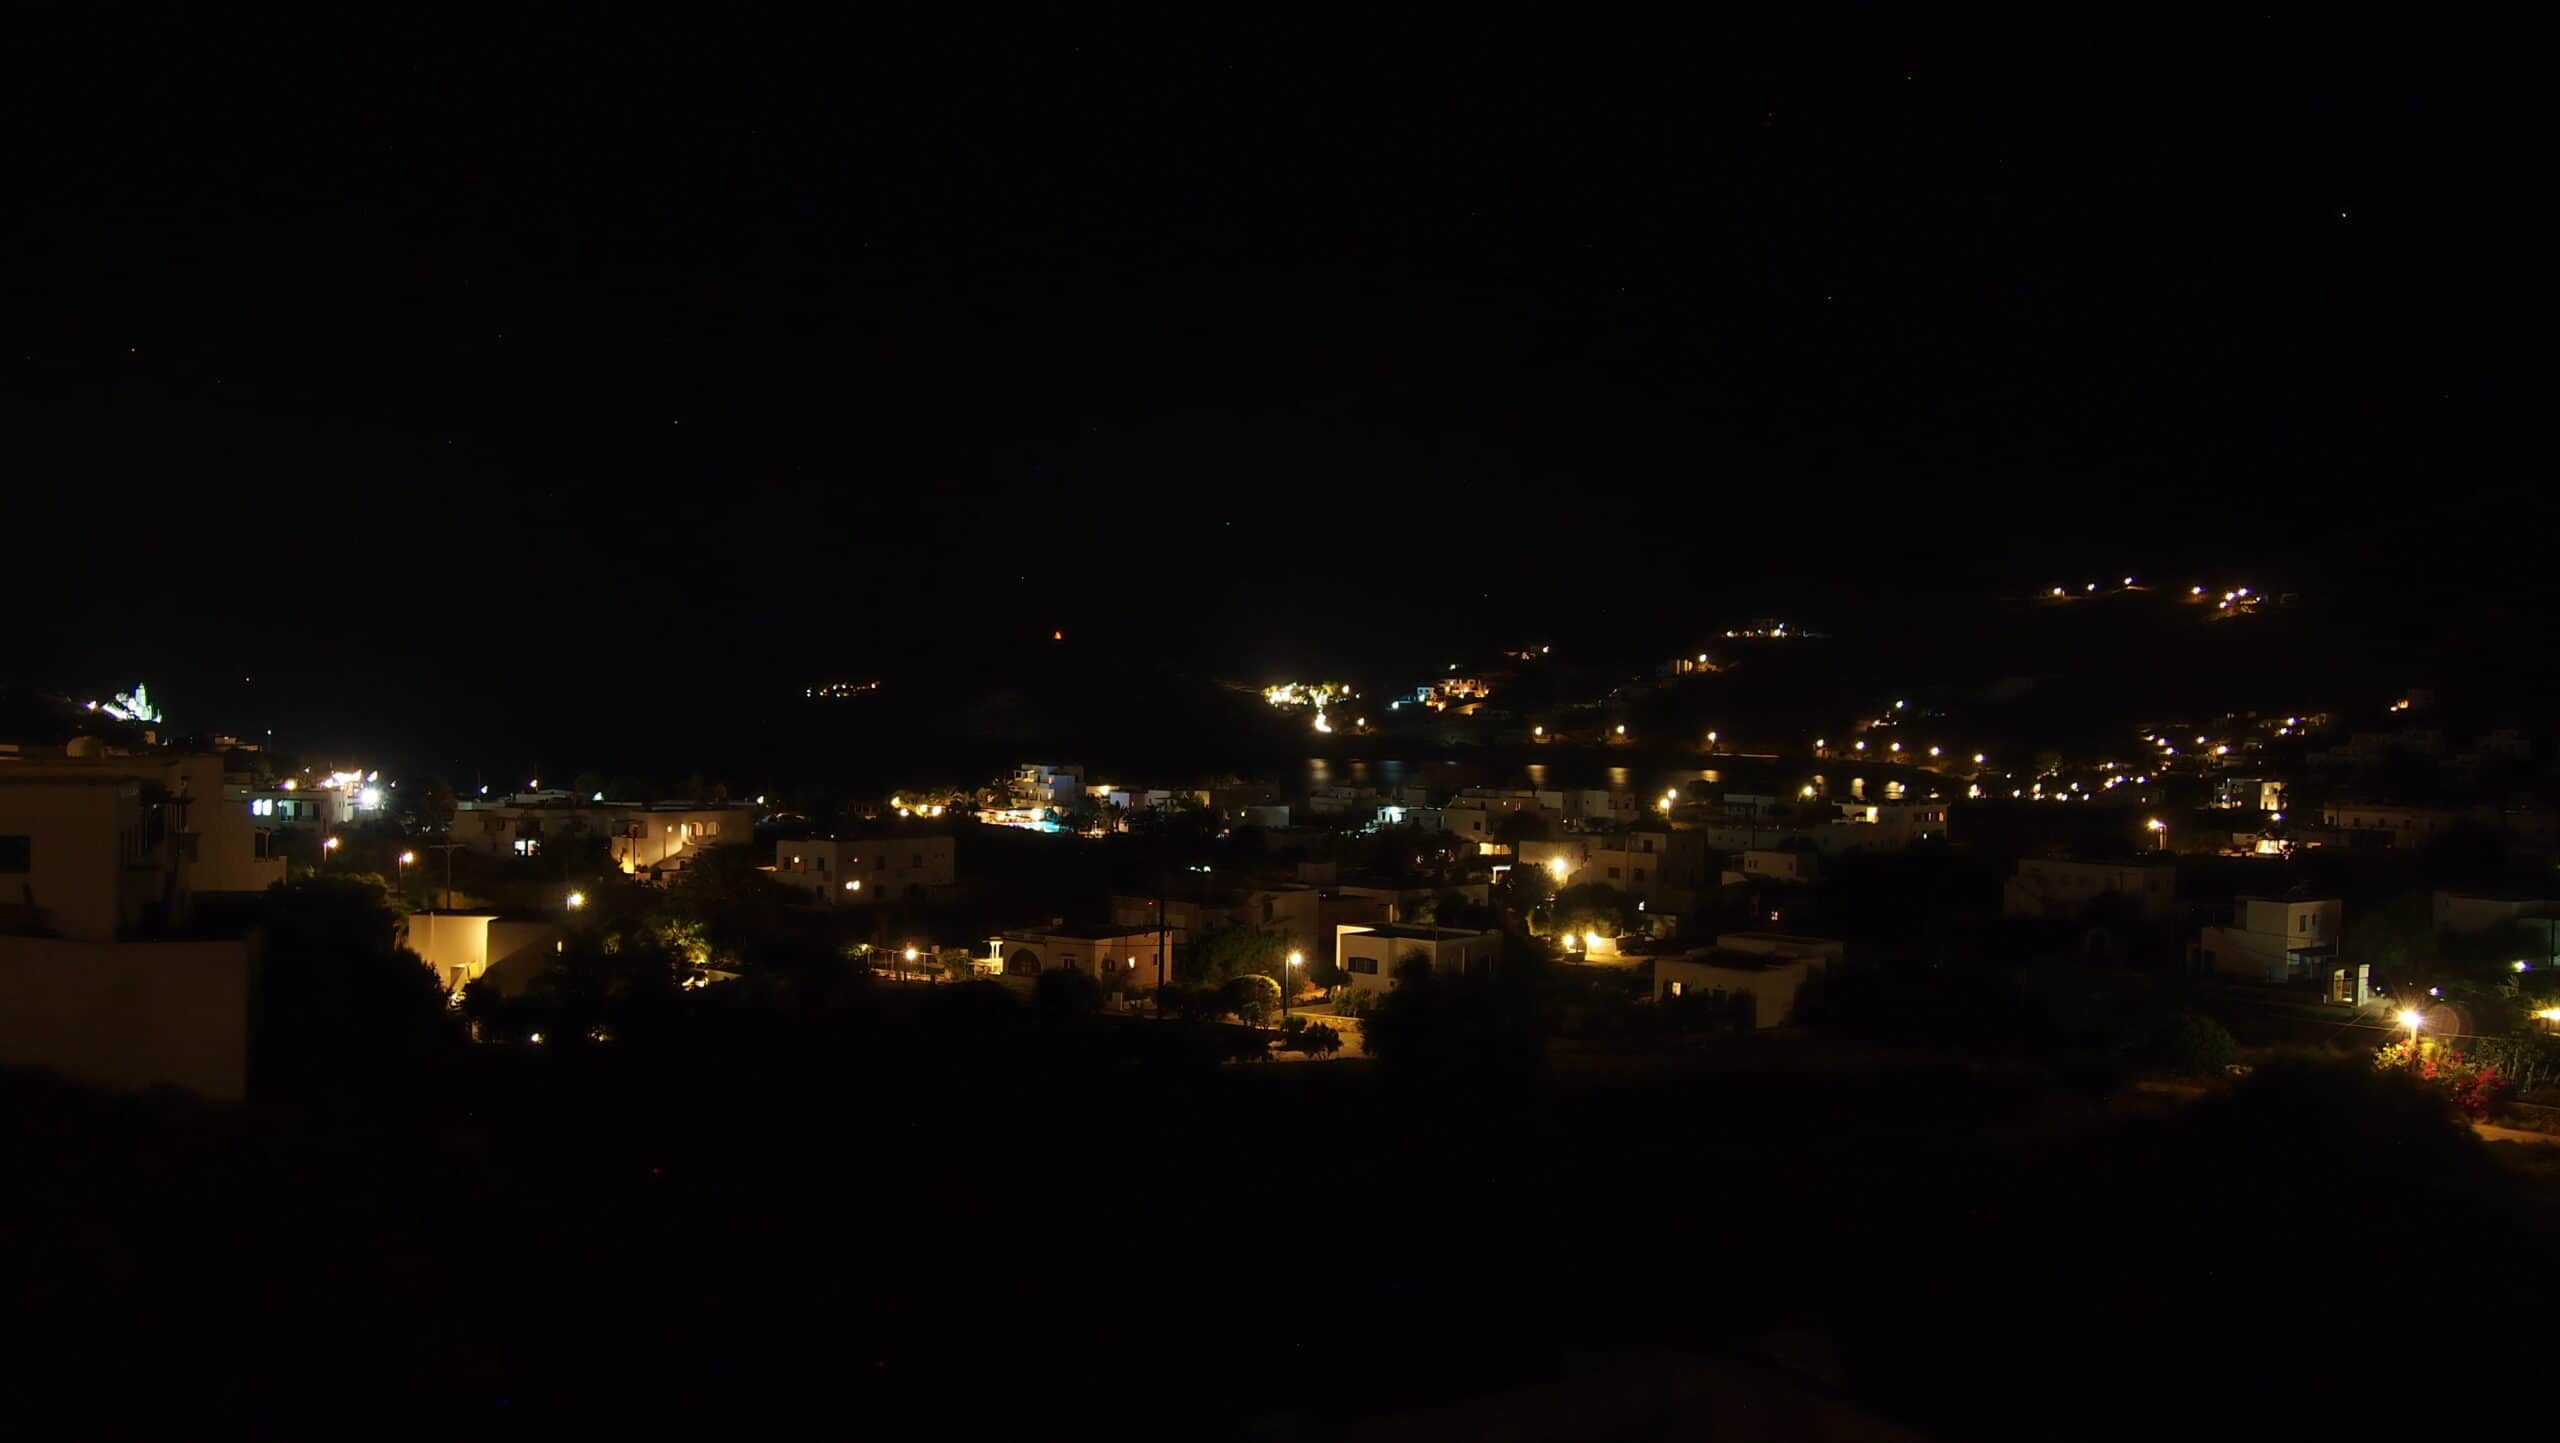 Night veranda view